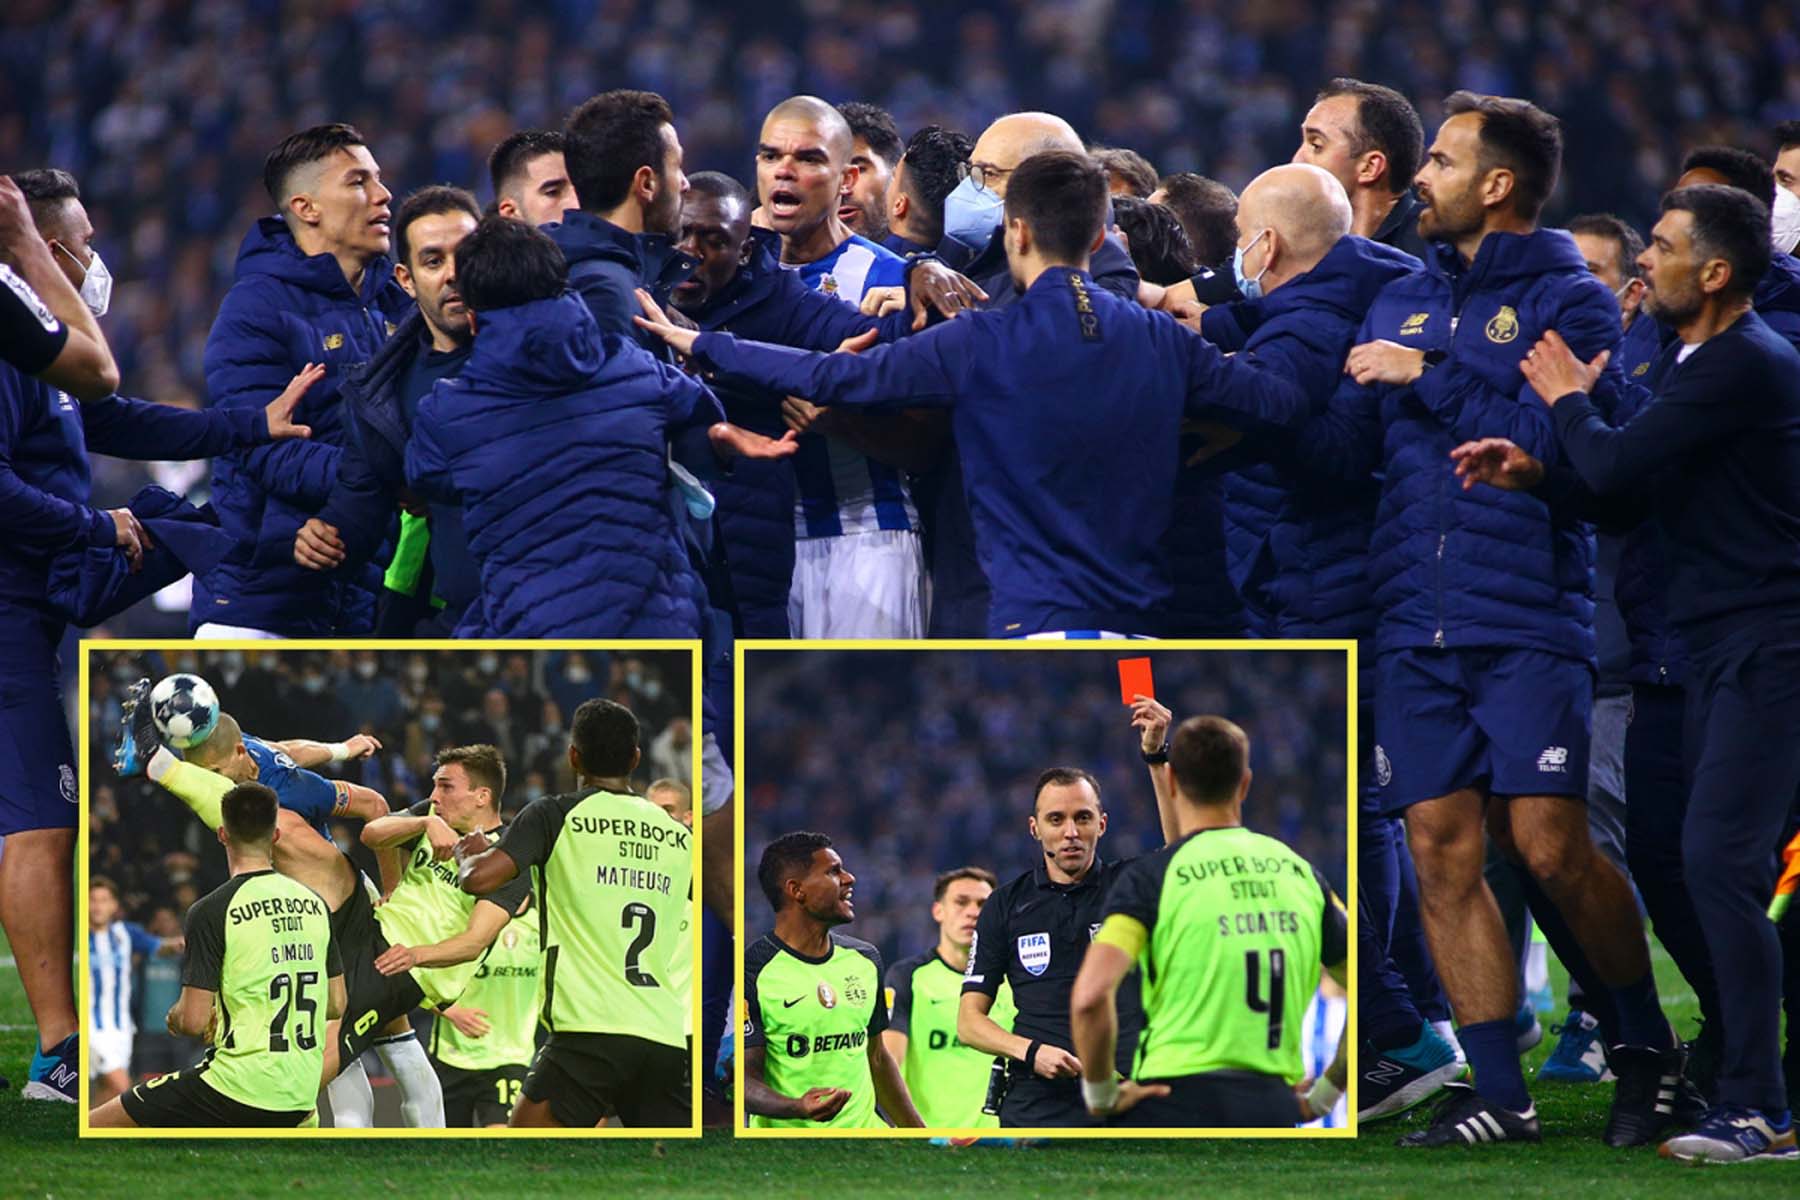 Porto - Sporting Lizbon maçında saha karıştı! Futbolcular birbirine girdi, 4 kırmızı kart çıktı 